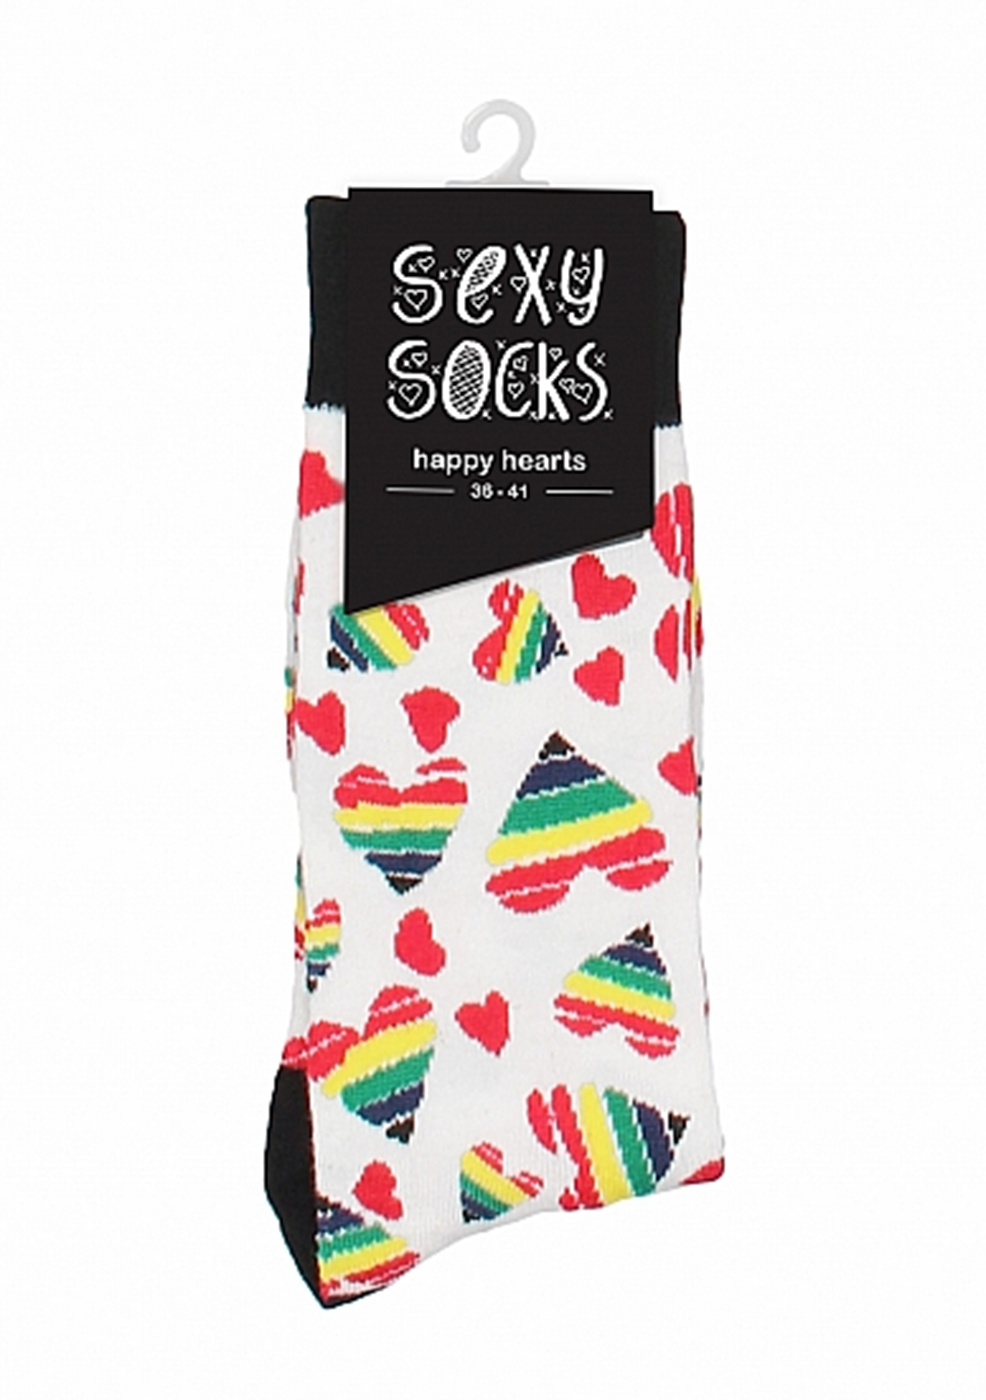 Sexy Socks: Happy Hearts 36-41